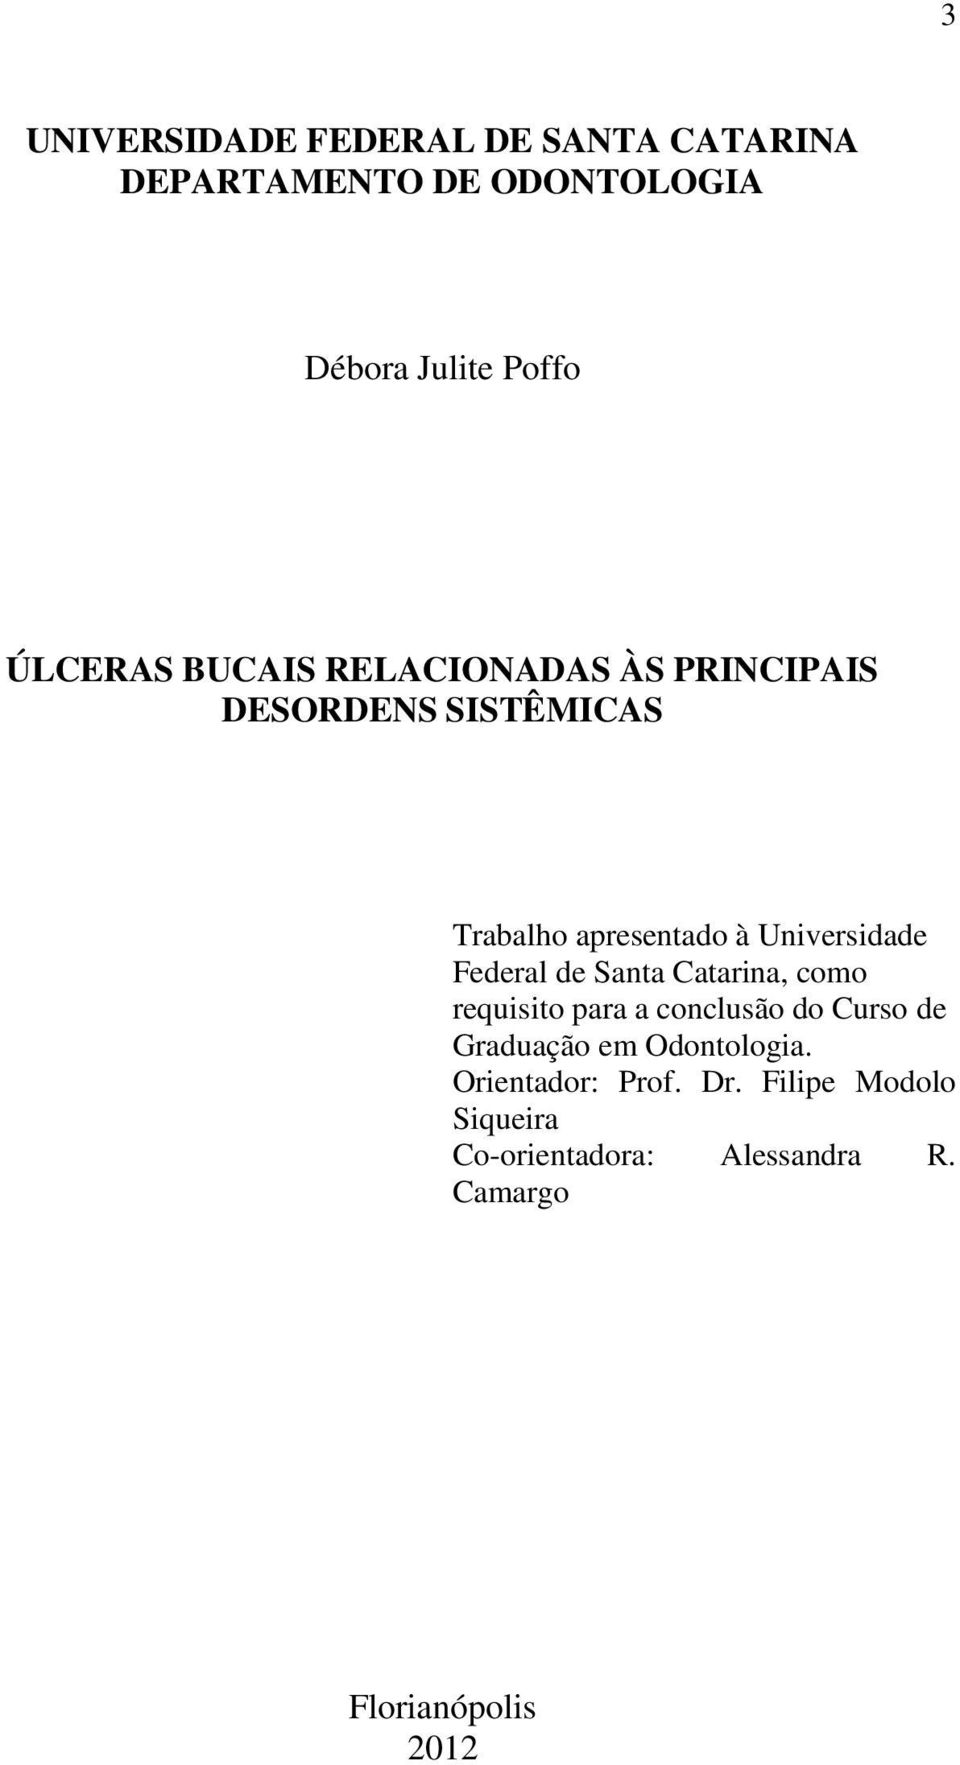 Federal de Santa Catarina, como requisito para a conclusão do Curso de Graduação em Odontologia.